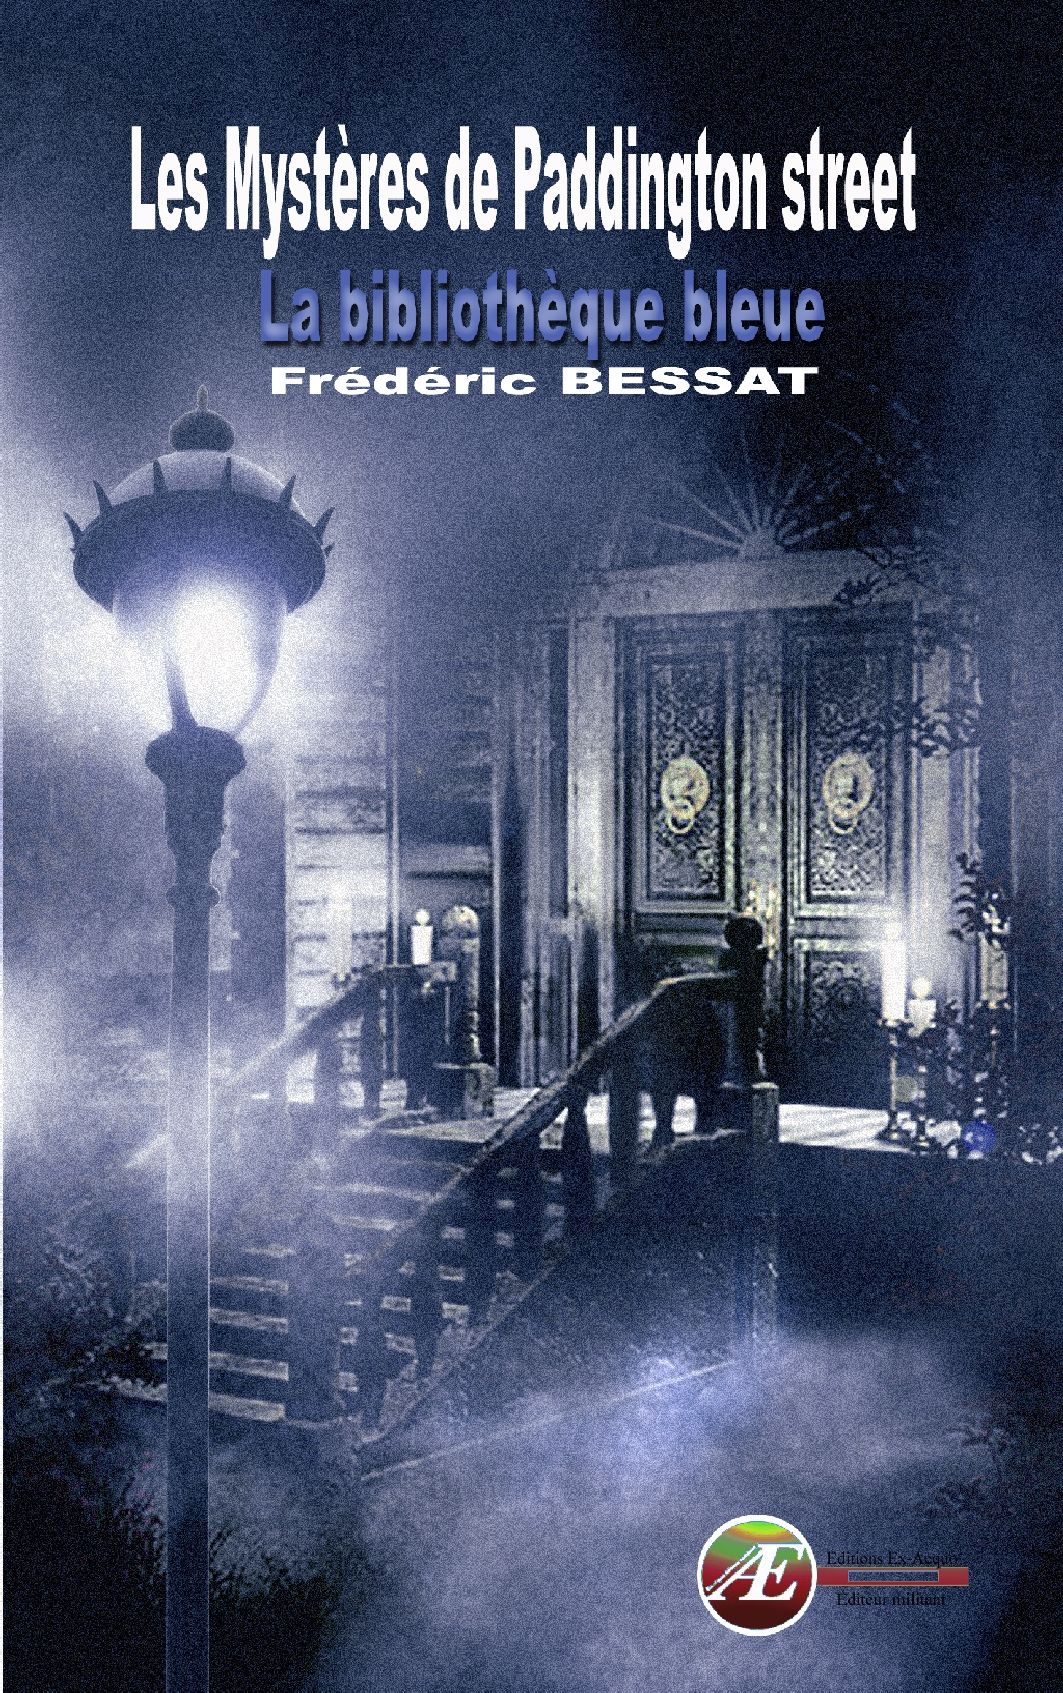 You are currently viewing Les mystères de Paddington Street, de Frédéric Bessat